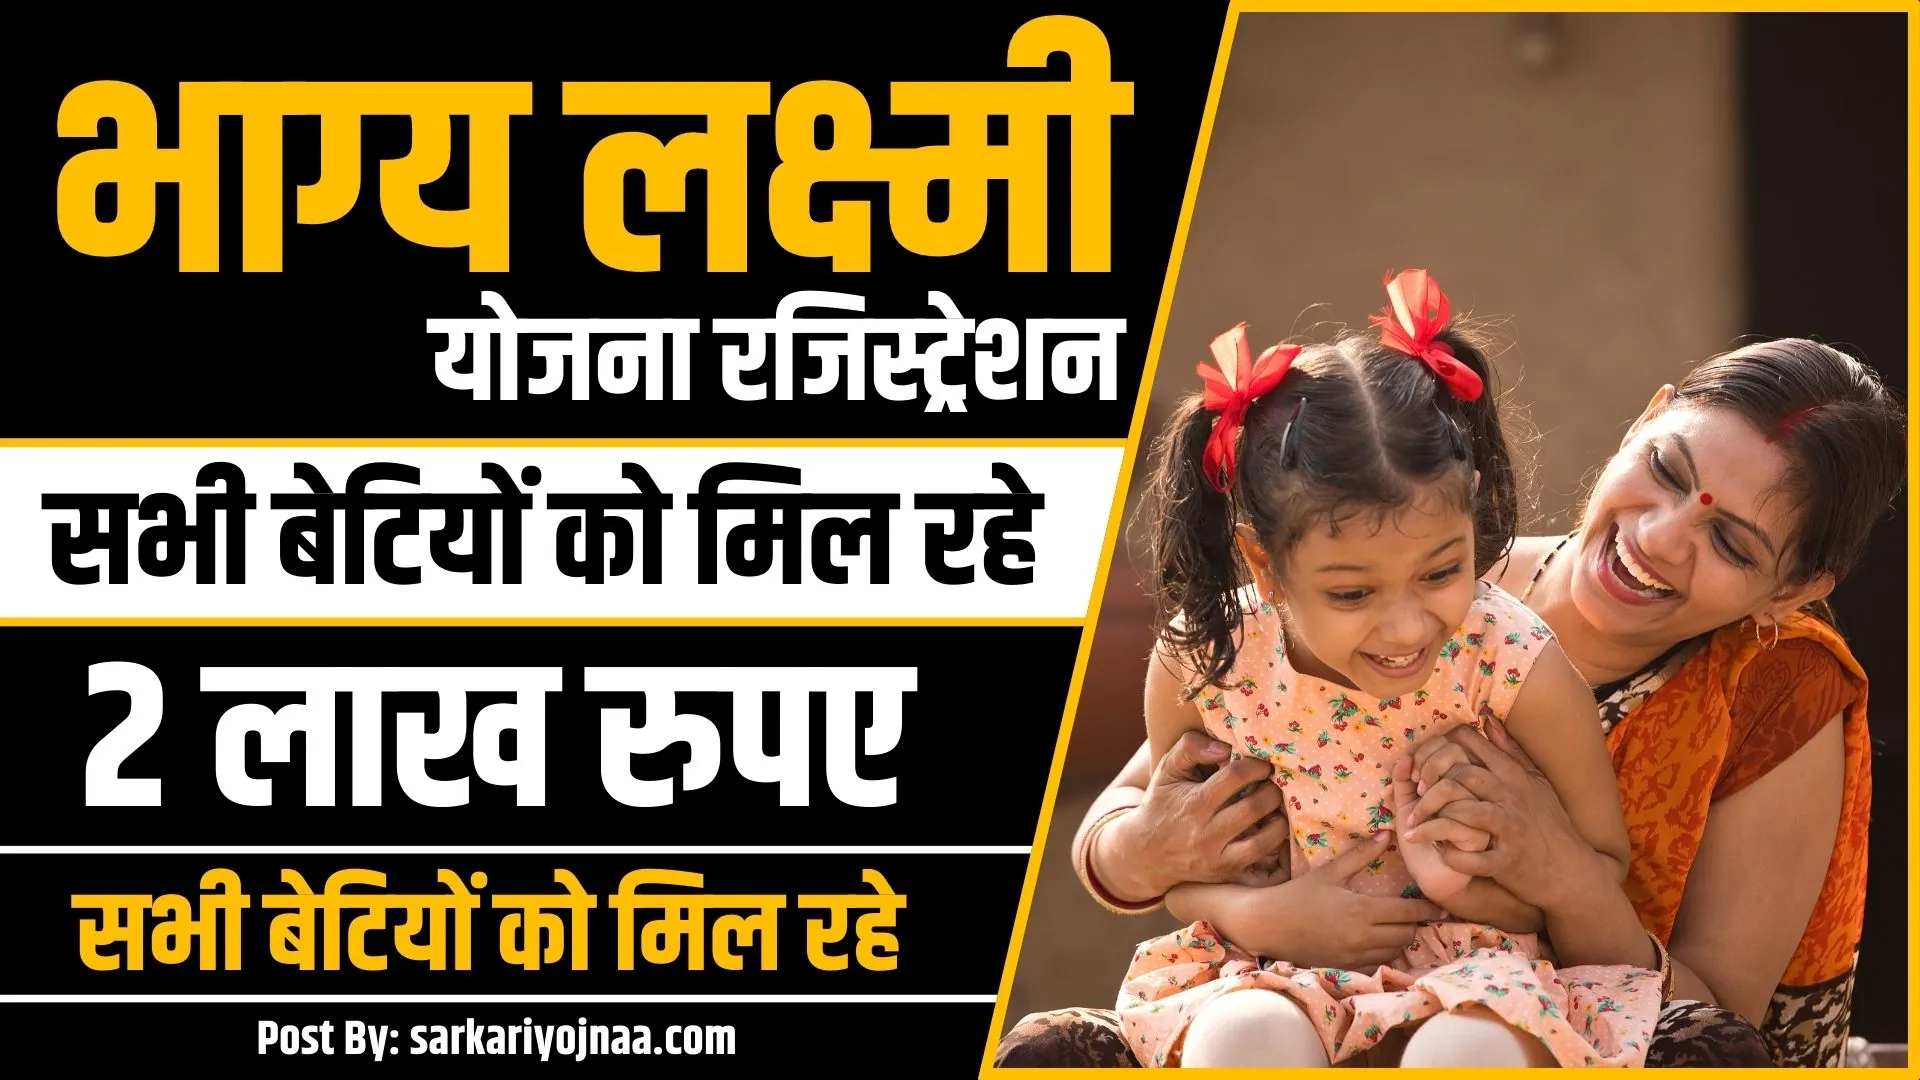 Bhagya Laxmi Yojana Registration: सभी बेटियों को मिल रहे 2 लाख रुपए, यहाँ से रजिस्ट्रेशन करें